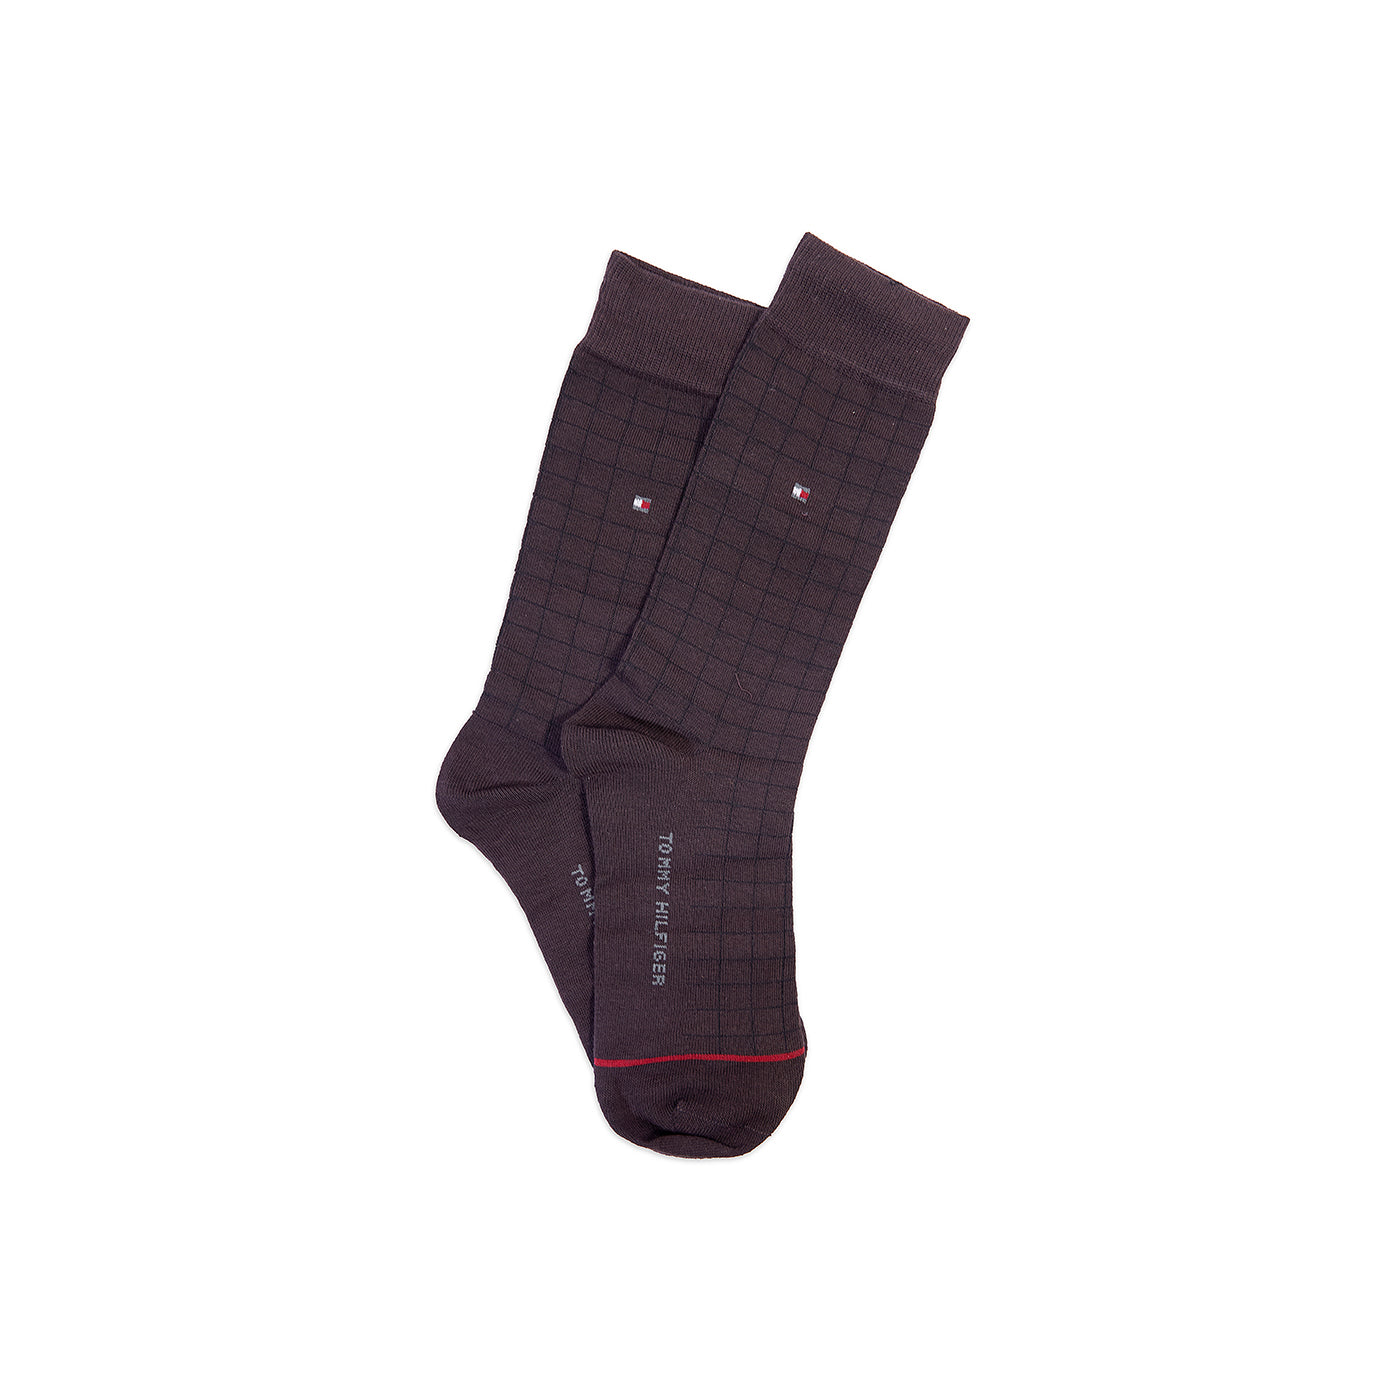 TMS Branded T-o-m-m-y Formal Full Socks 1 (pack of 5)